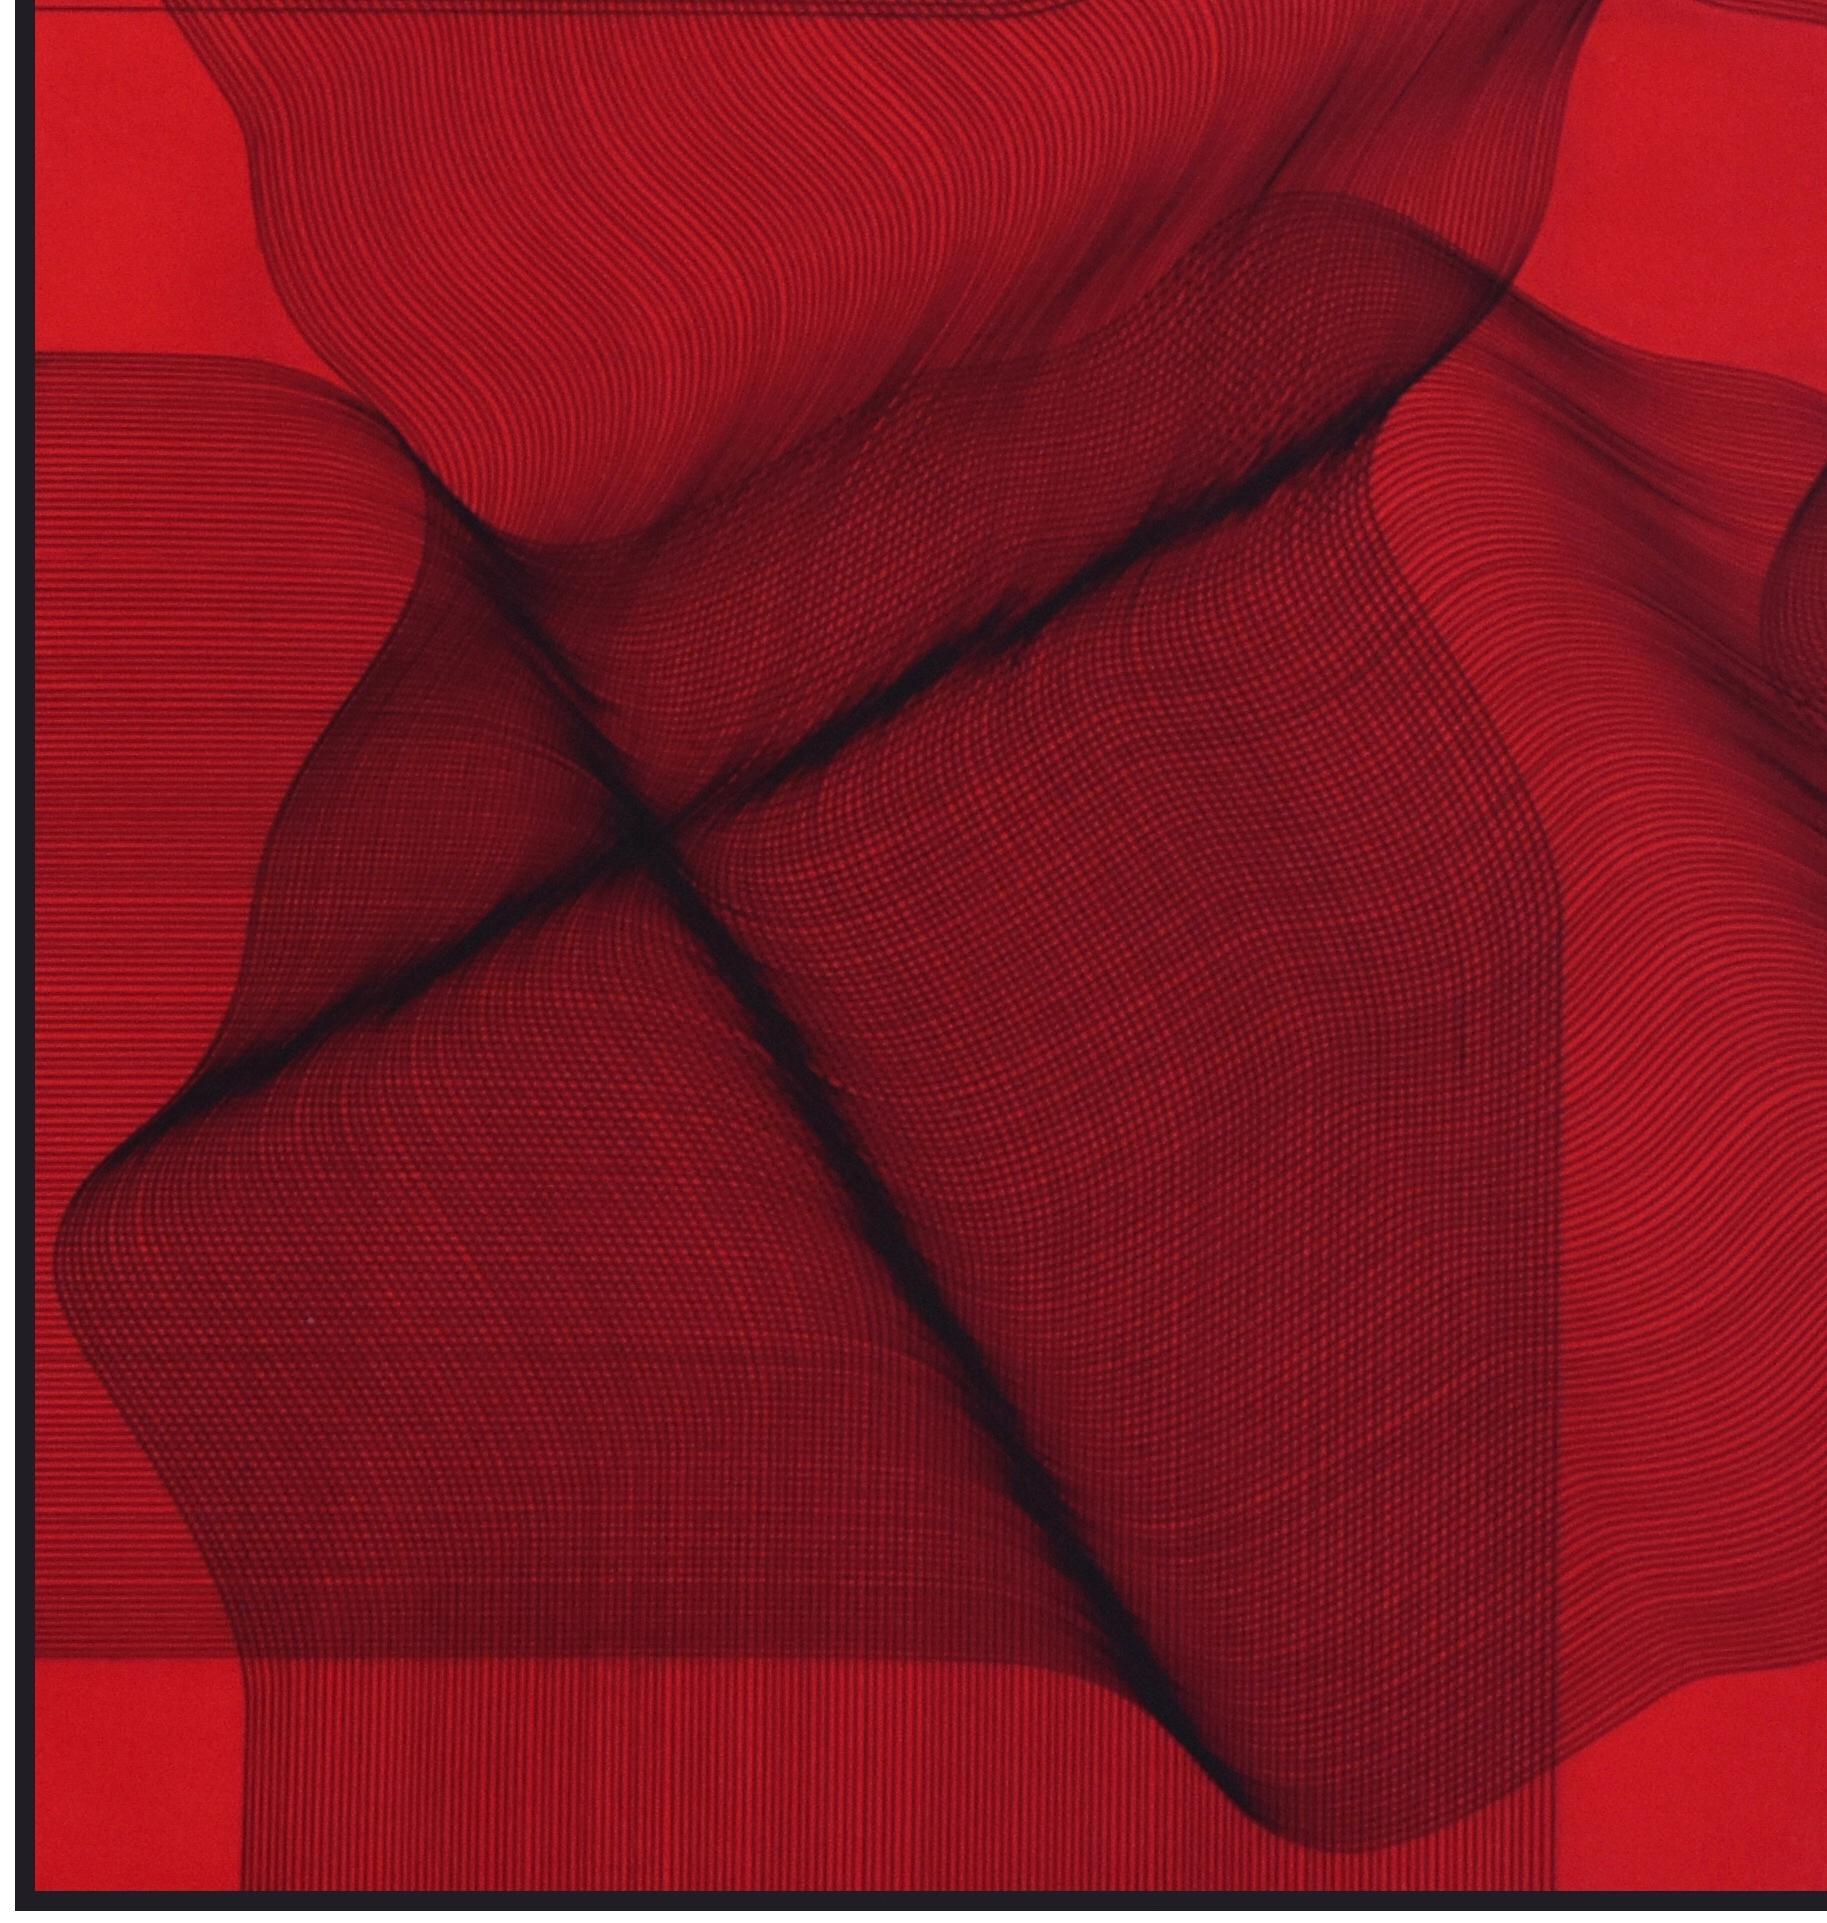 Rosso von Rosso – Painting von Roberto Lucchetta